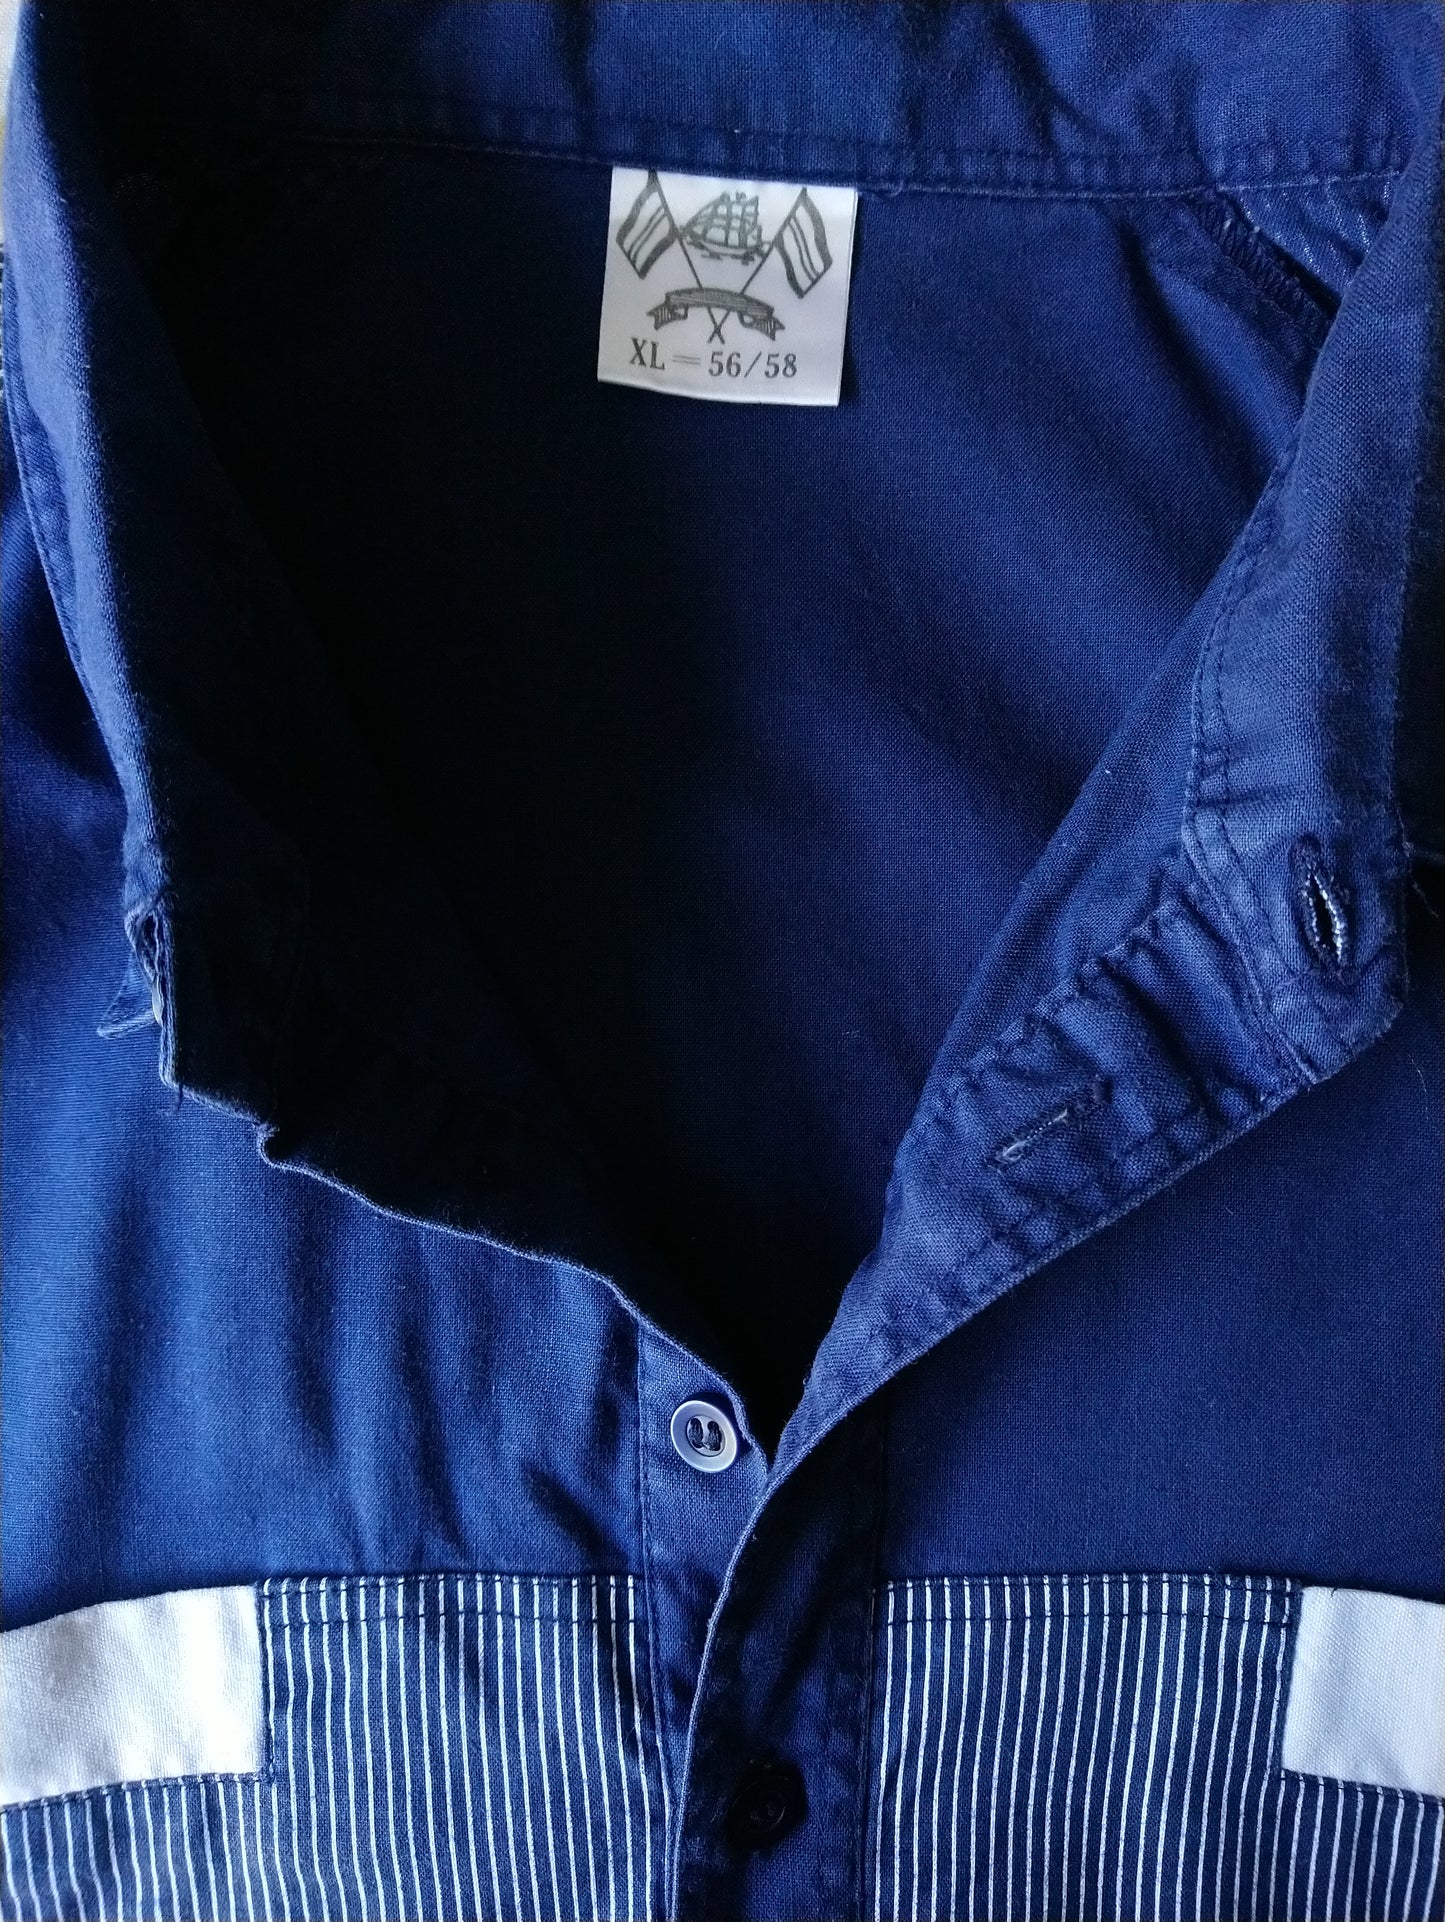 Polo vintage avec bande élastique. Couleur blanc bleu. Taille xl / xxl-2xl.